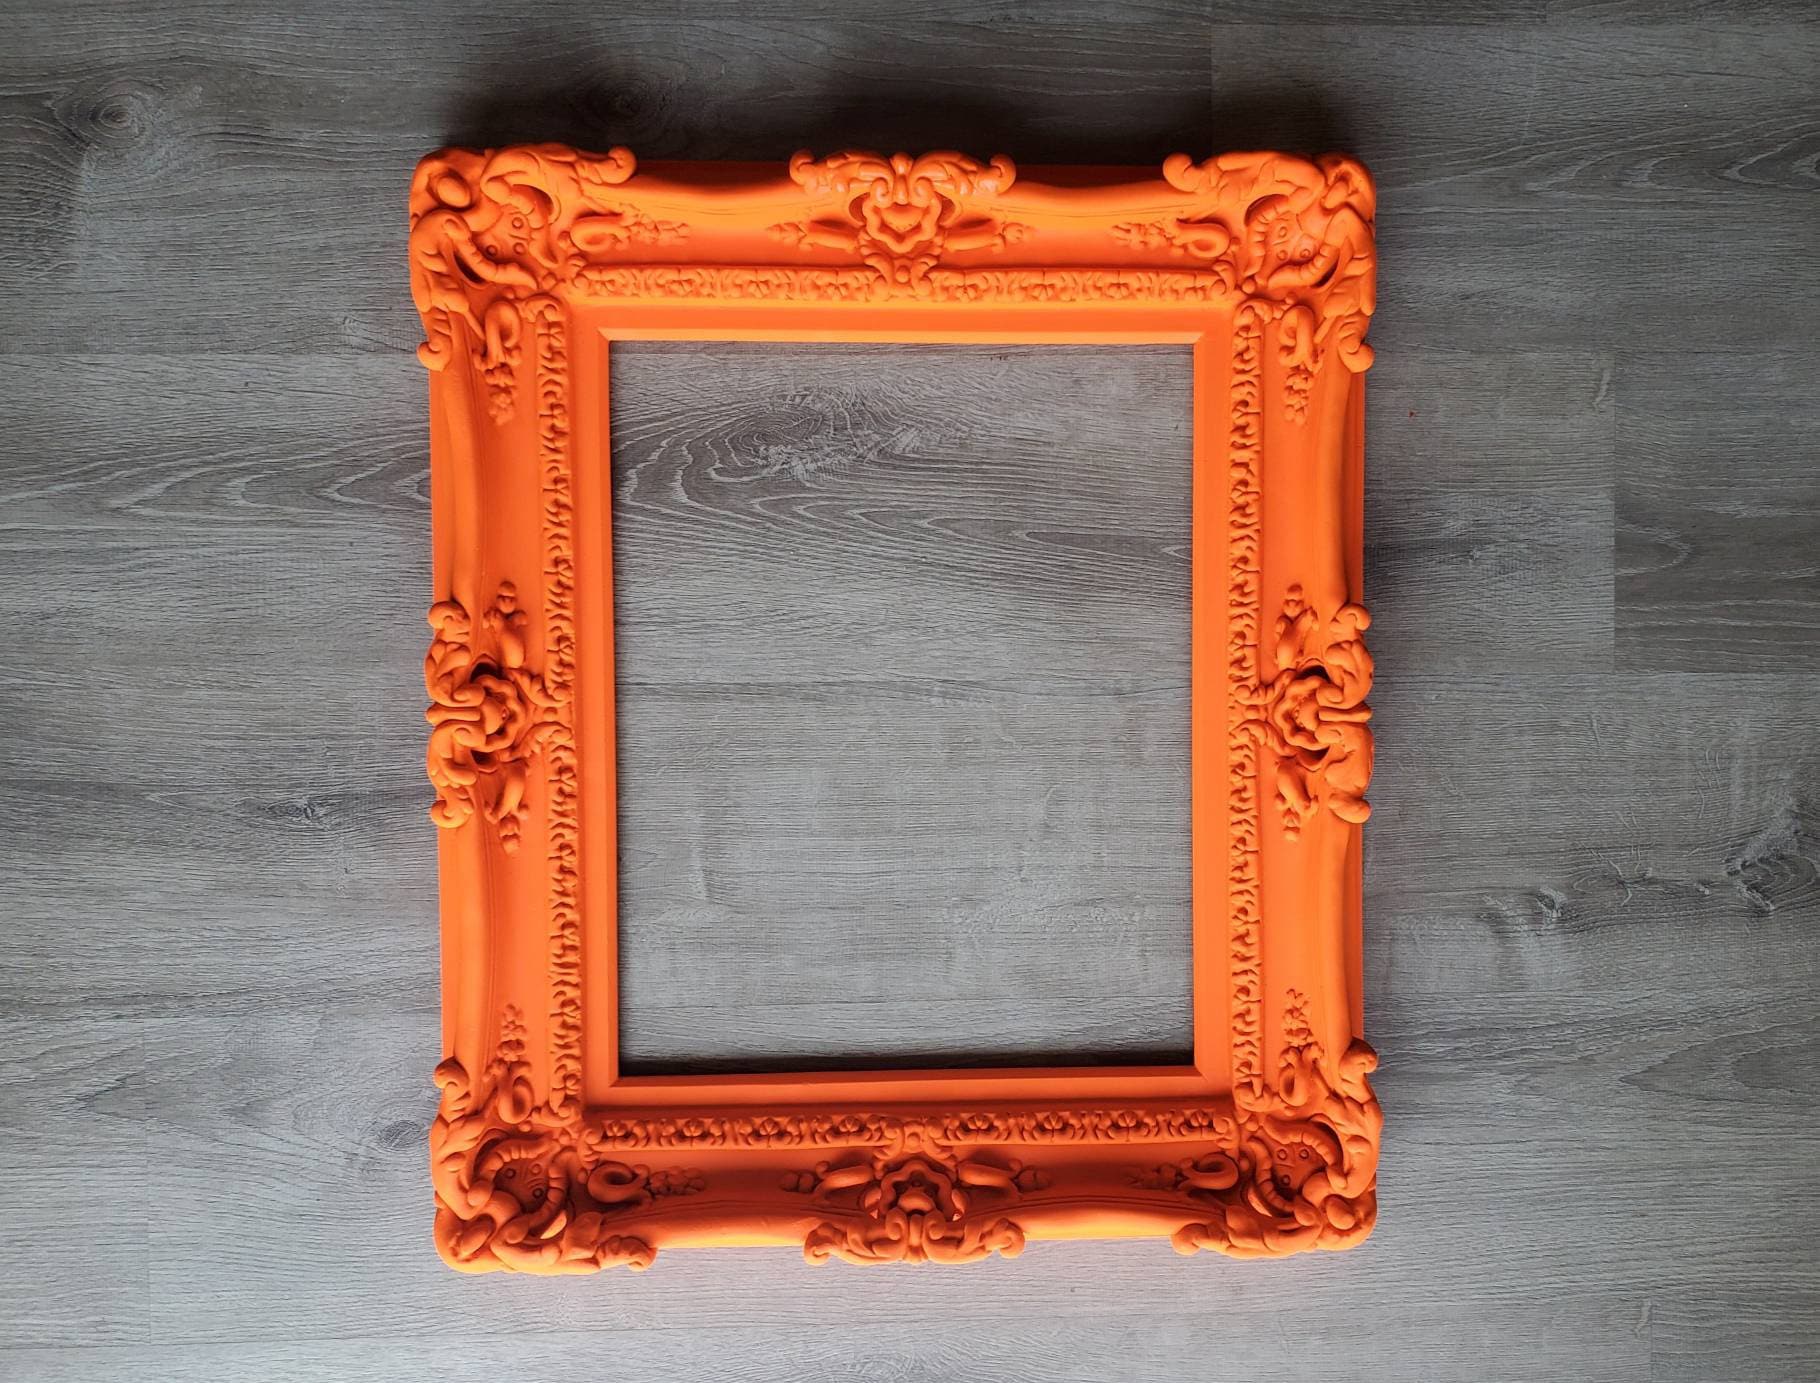 16x20 Shabby Chic / Farmhouse Orange Picture Frame - UV Acrylic, Foam Board  Backing, & Hanging Hardware 16 x 20 - Yahoo Shopping